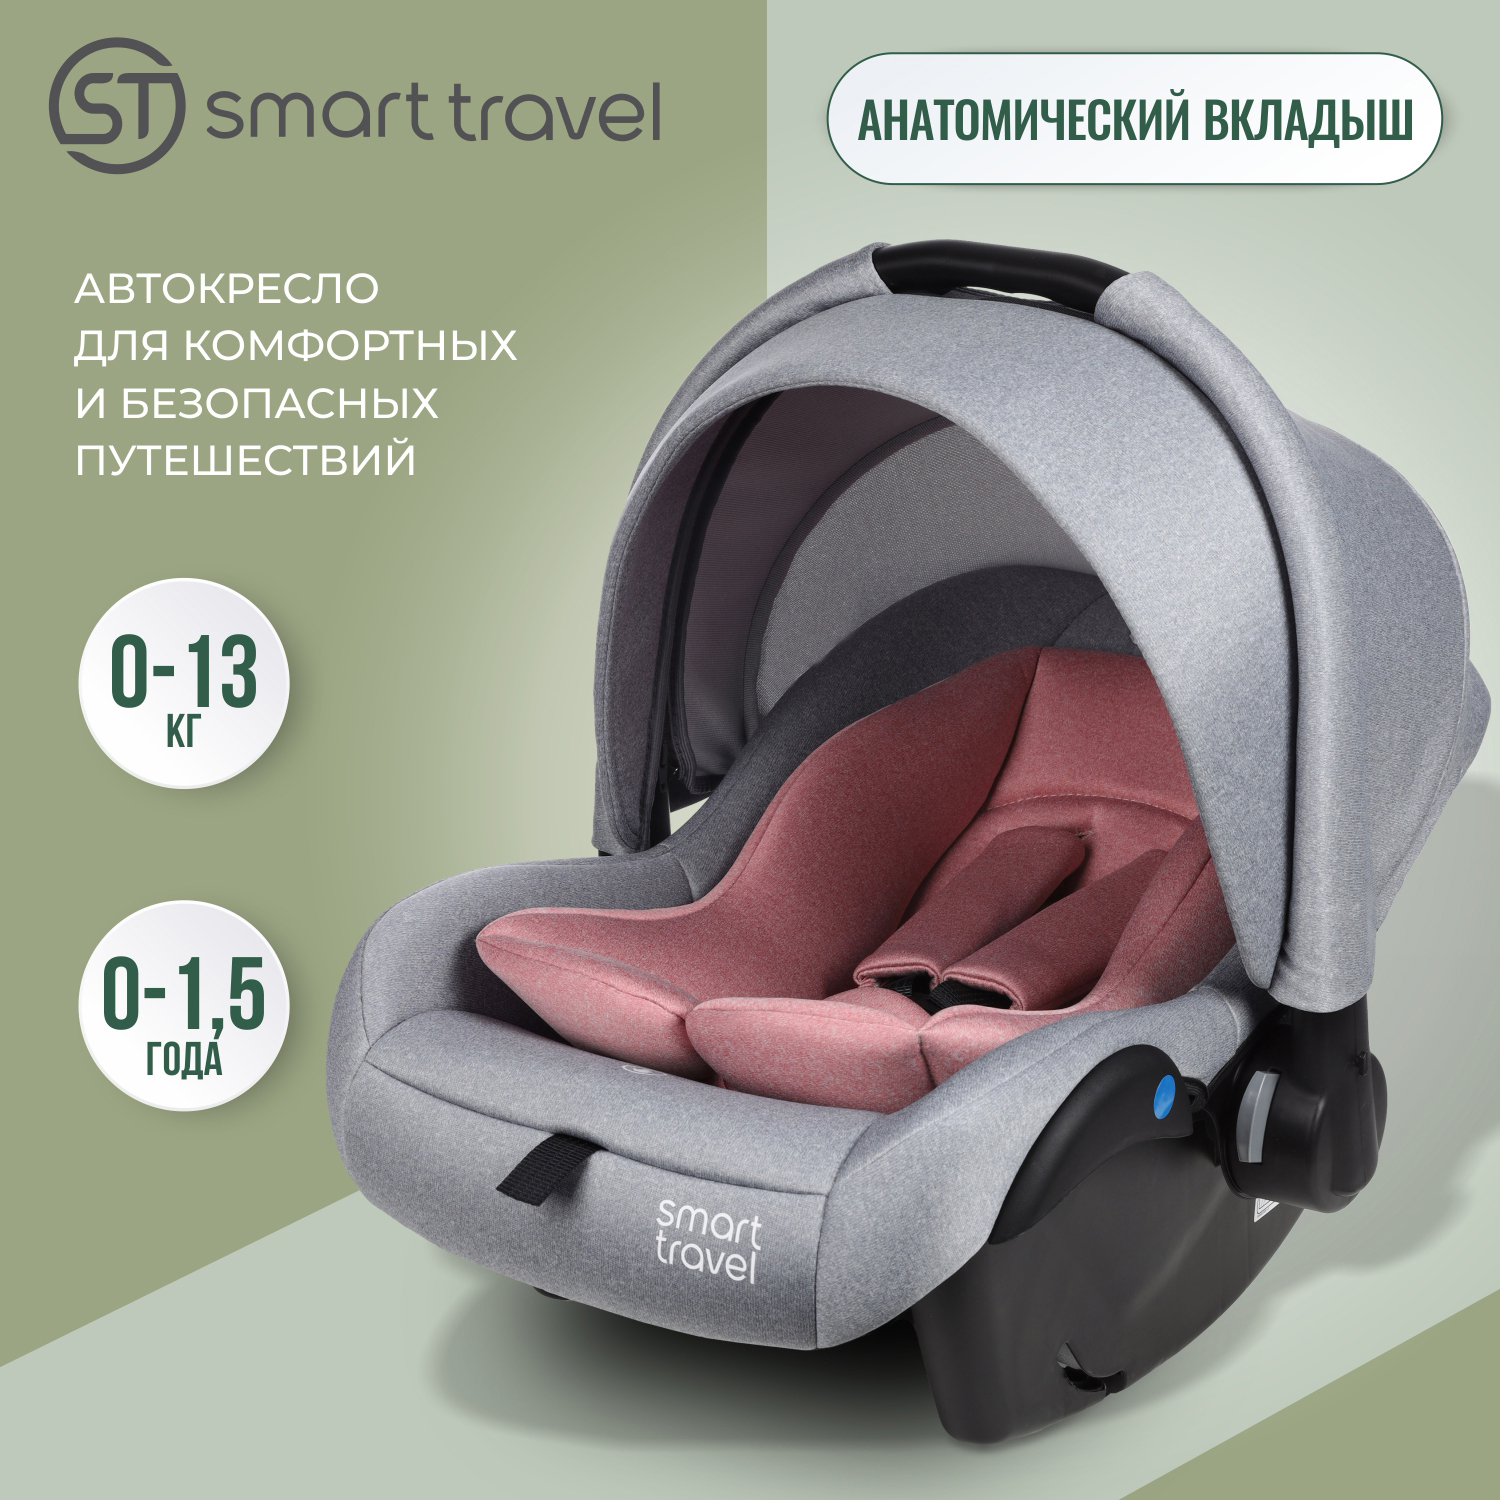 Детское автокресло SMART TRAVEL First lux, группа 0+, до 1,5 лет, до 13 кг., light grey автокресло smart travel forward